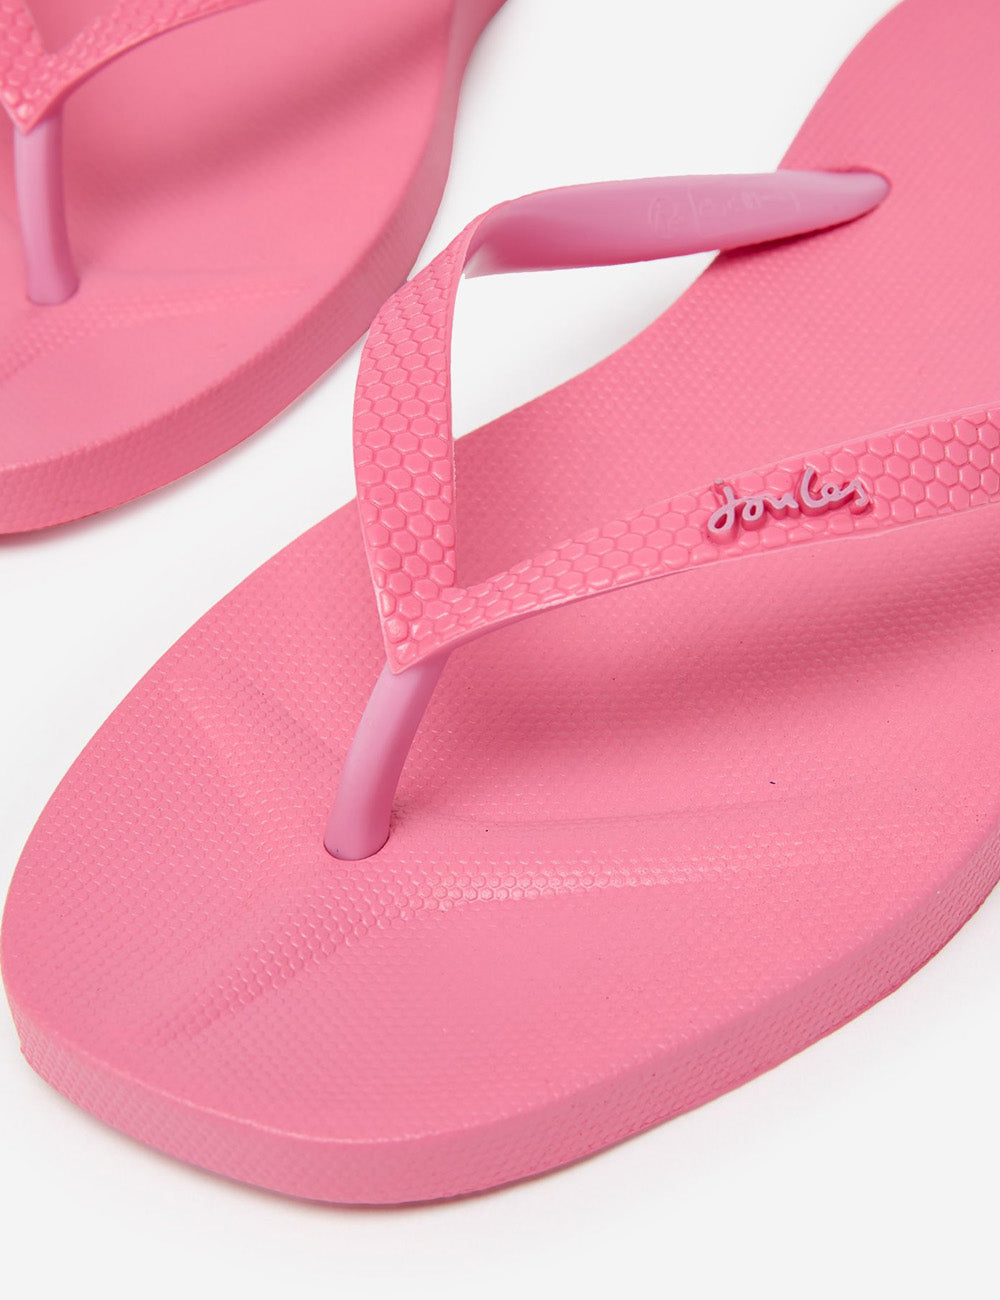 Joules Sunvale Flip Flop - Pink